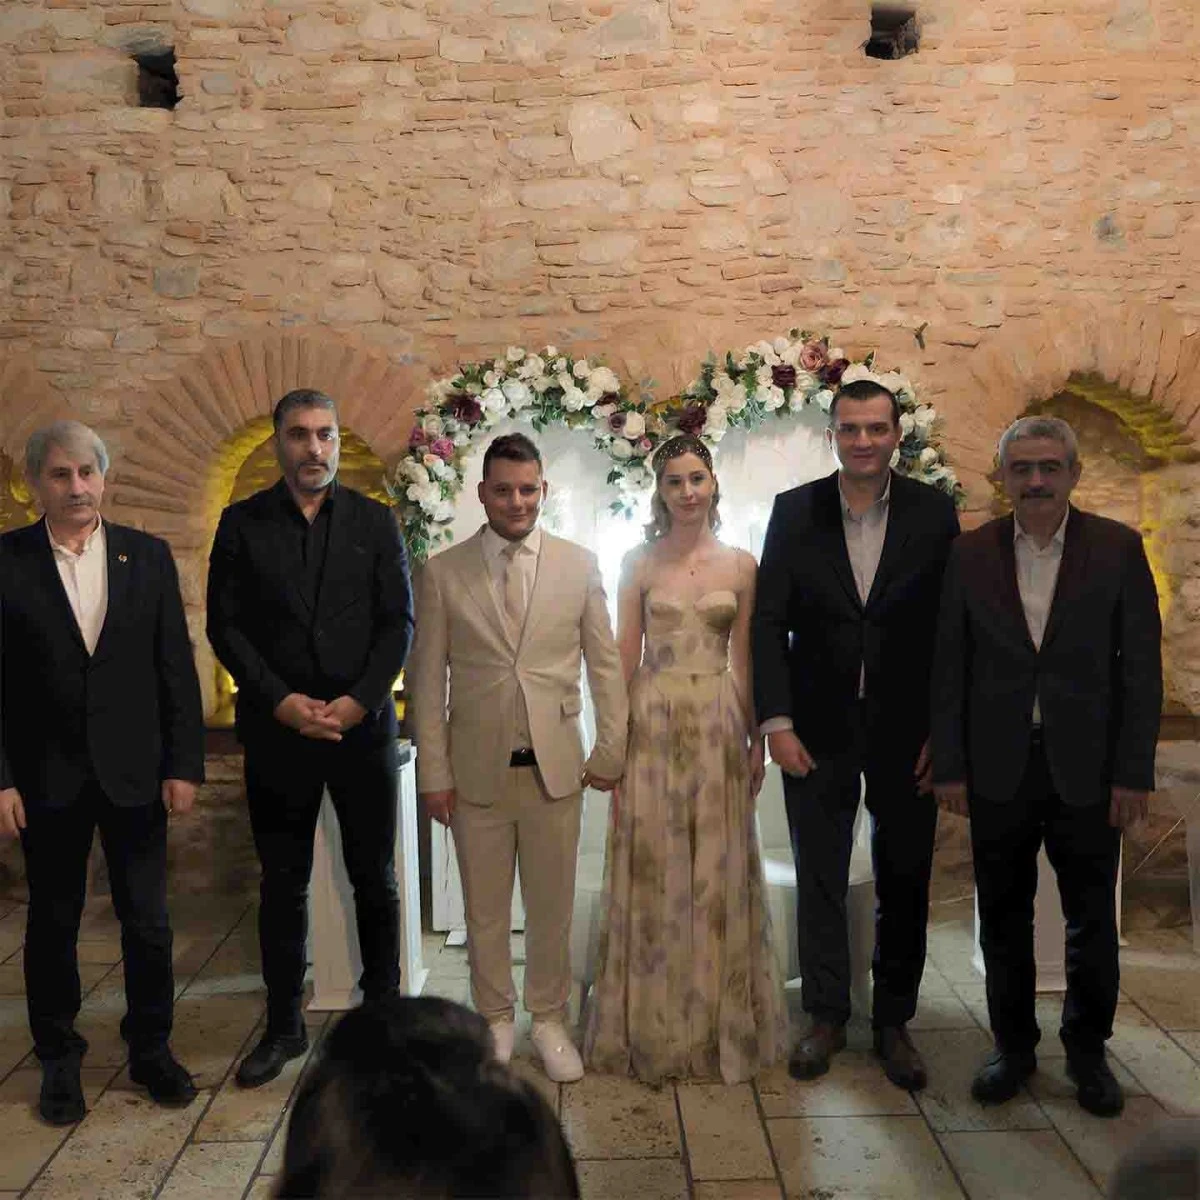 Gazeteci Aydemir, evlilik yolunda ilk adımı attı